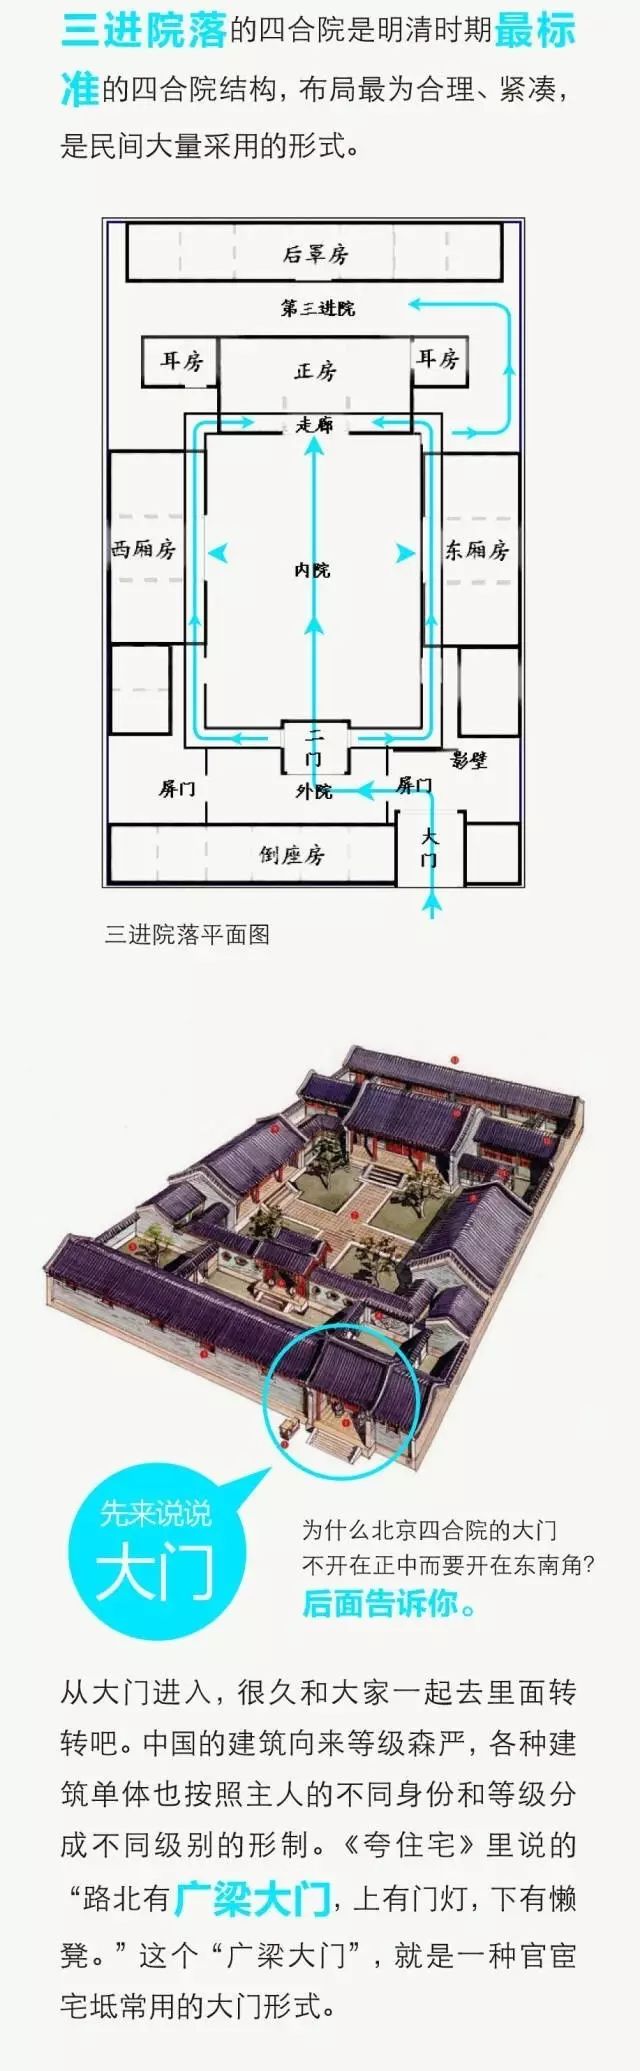 中国四合院的详细图解，满满都是文化